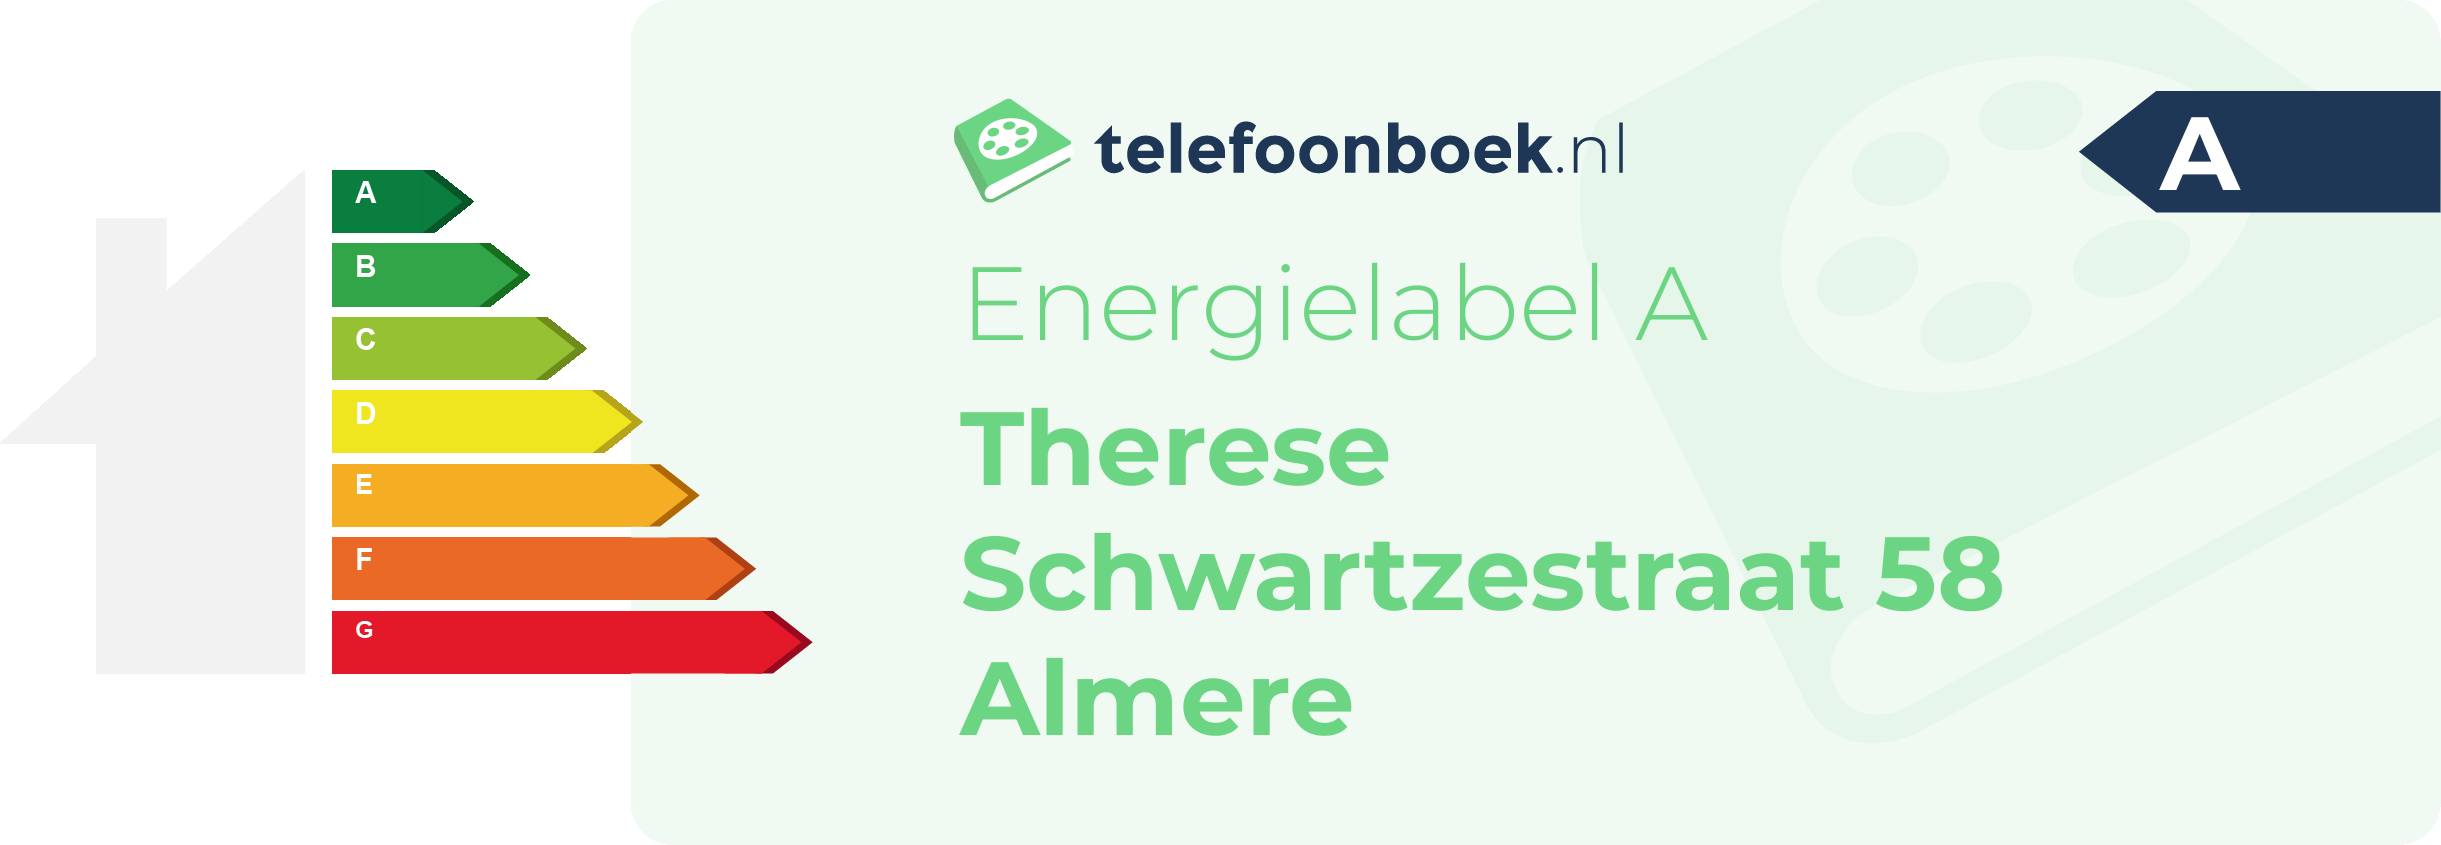 Energielabel Therese Schwartzestraat 58 Almere